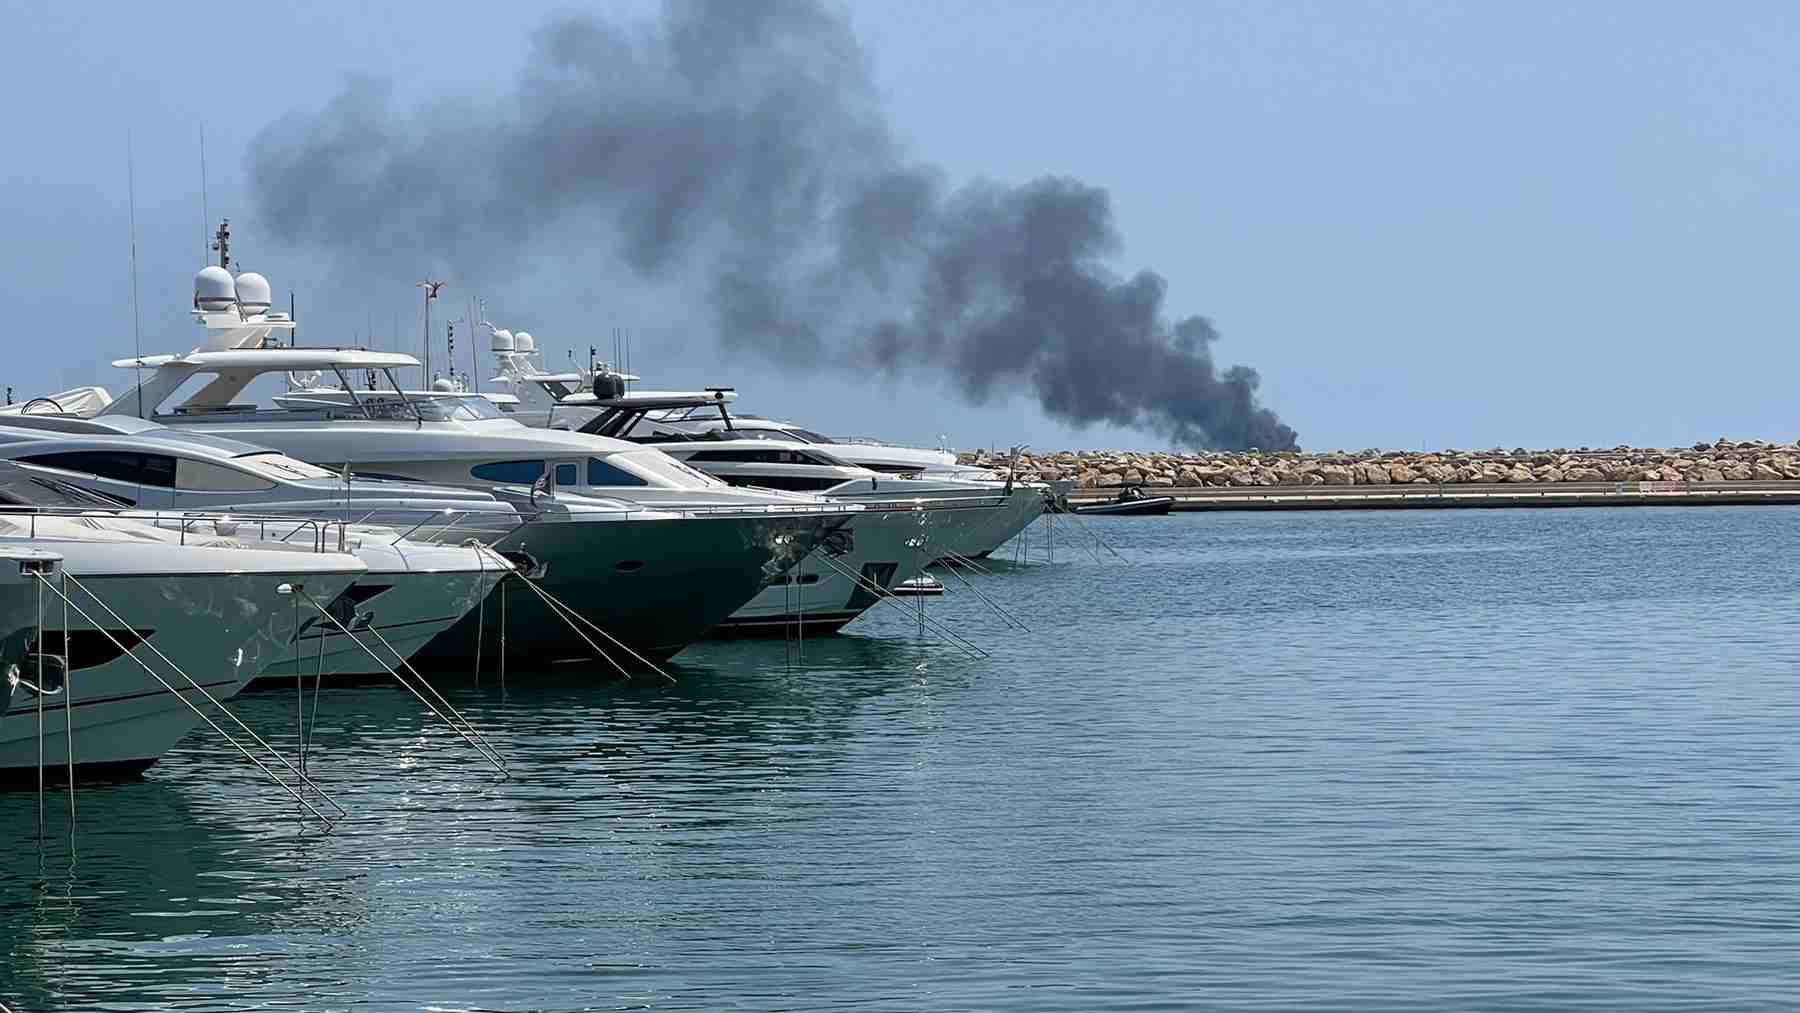 Imagen de la humareda provocada por el incendio de la embarcación.